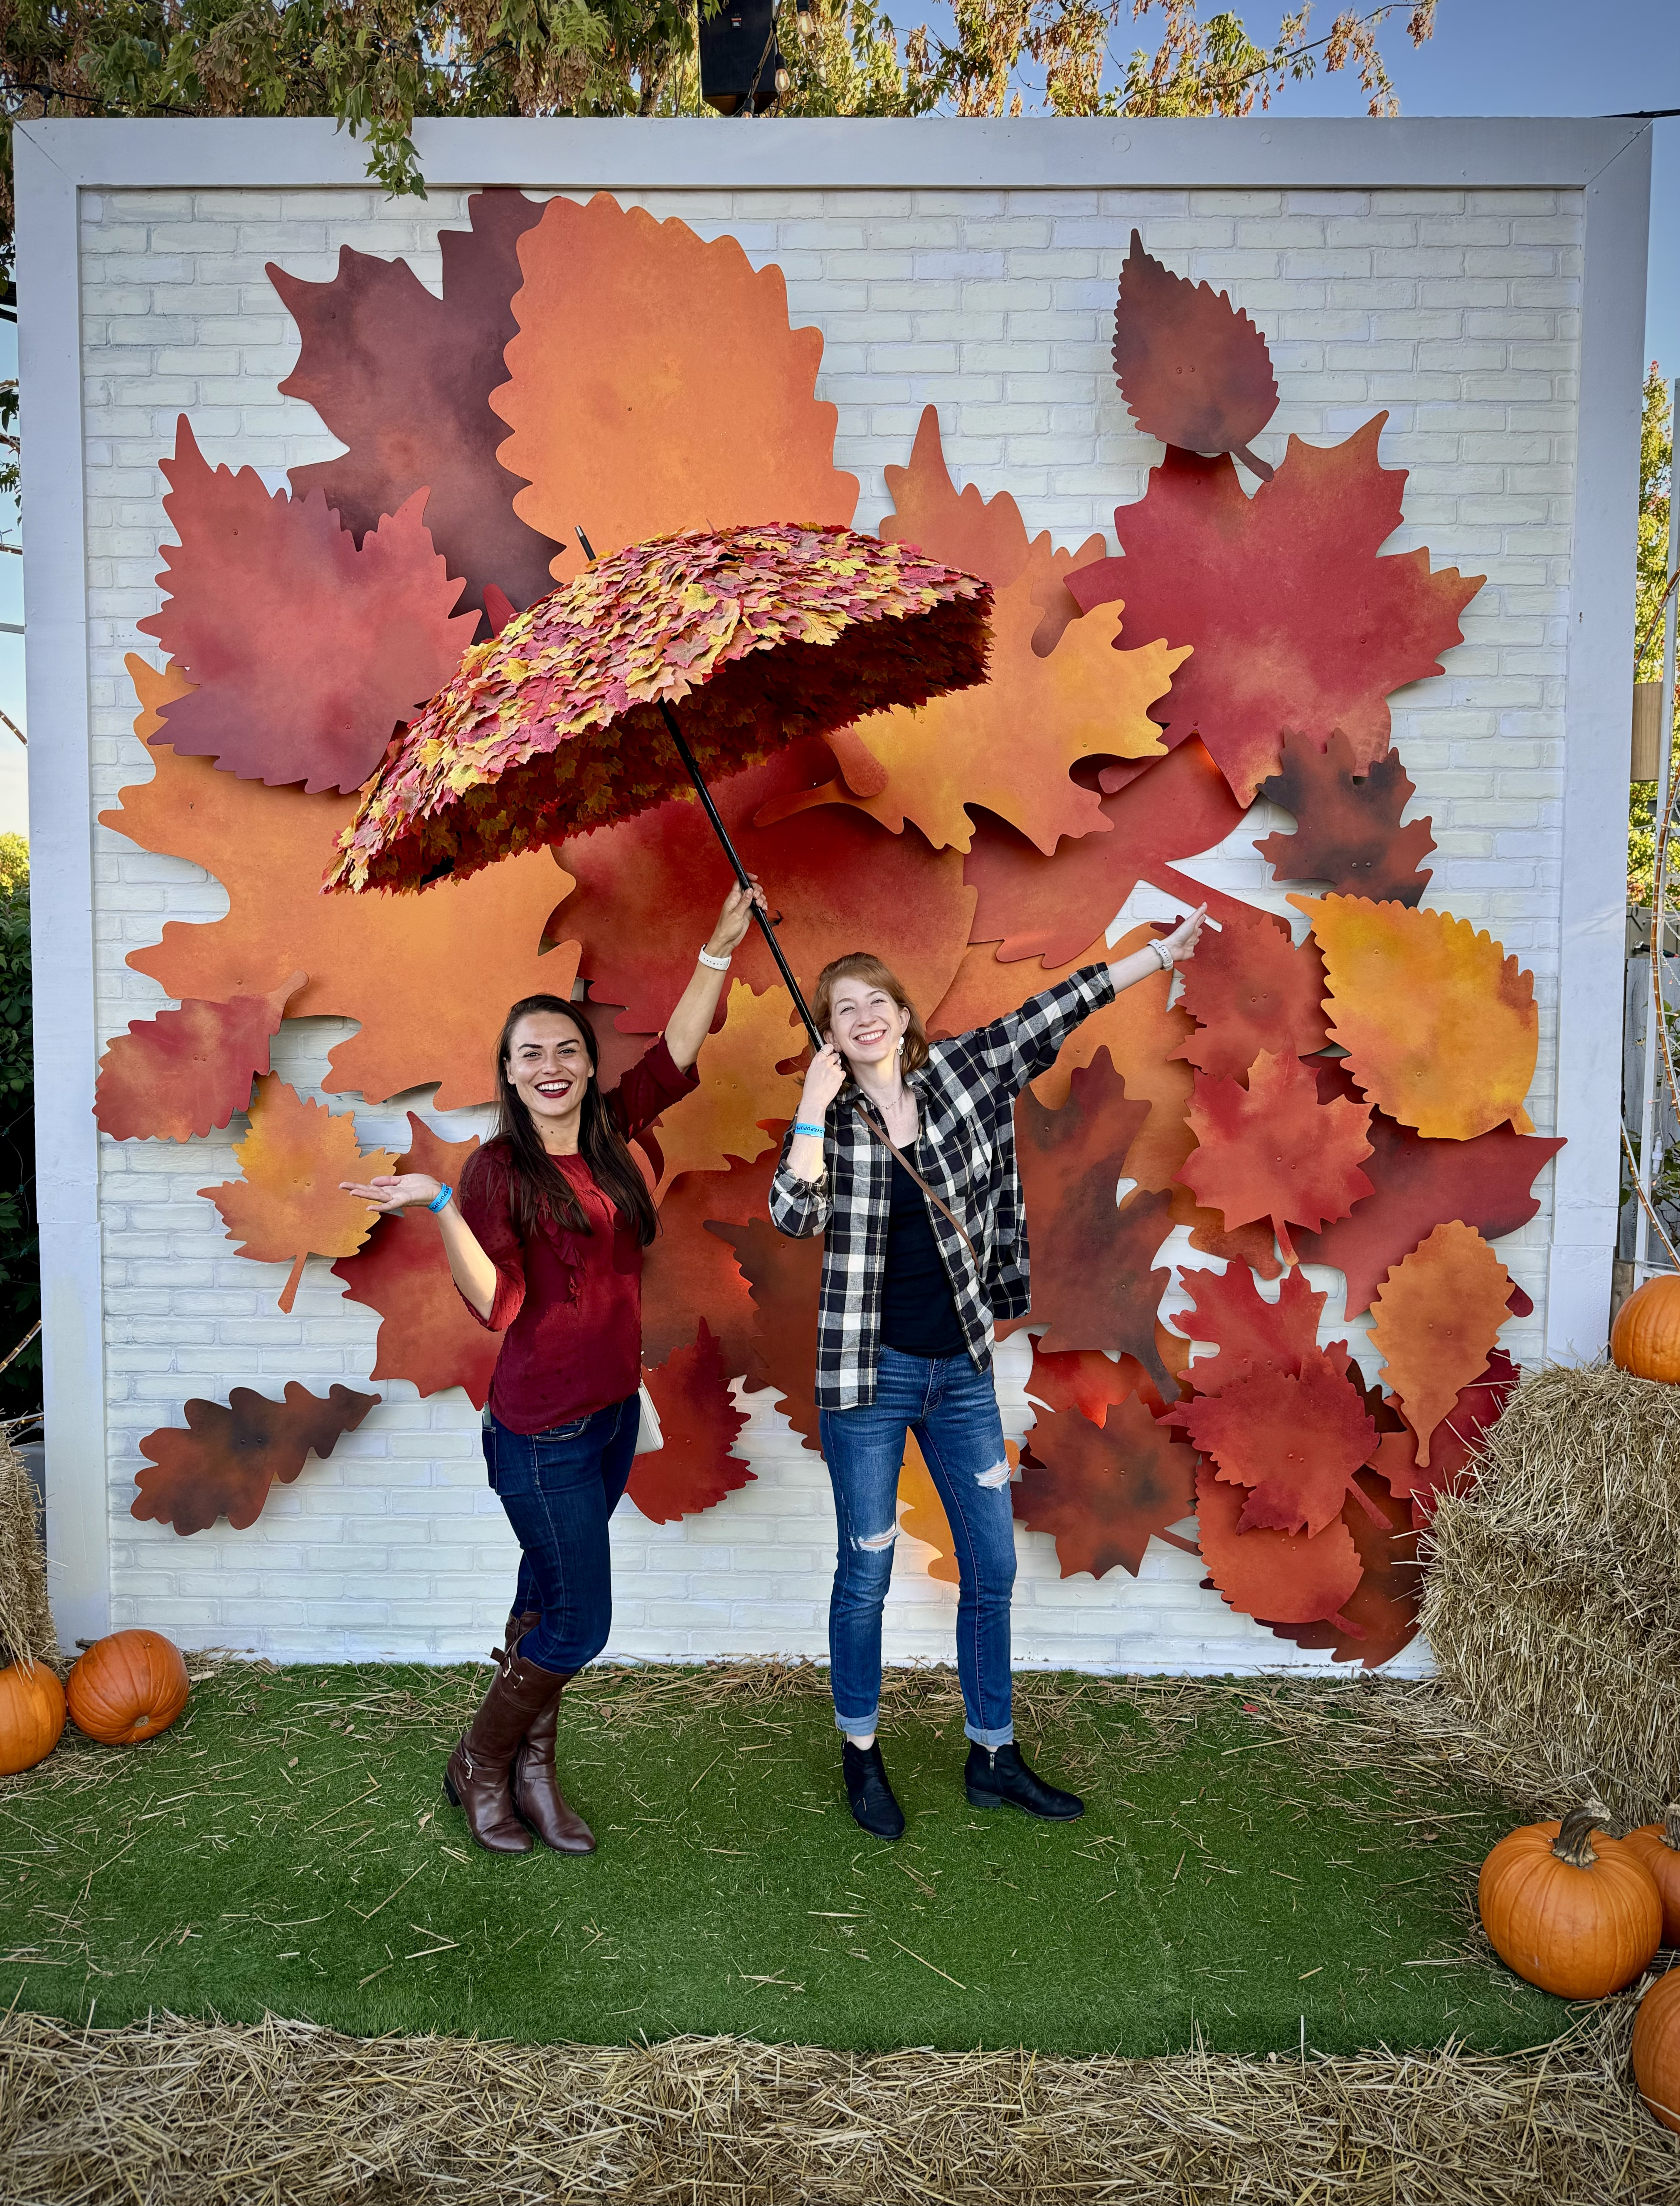 Lauren and Lauren with Jack's Pumpkin Pop Up decorations - Goose Island in Chicago